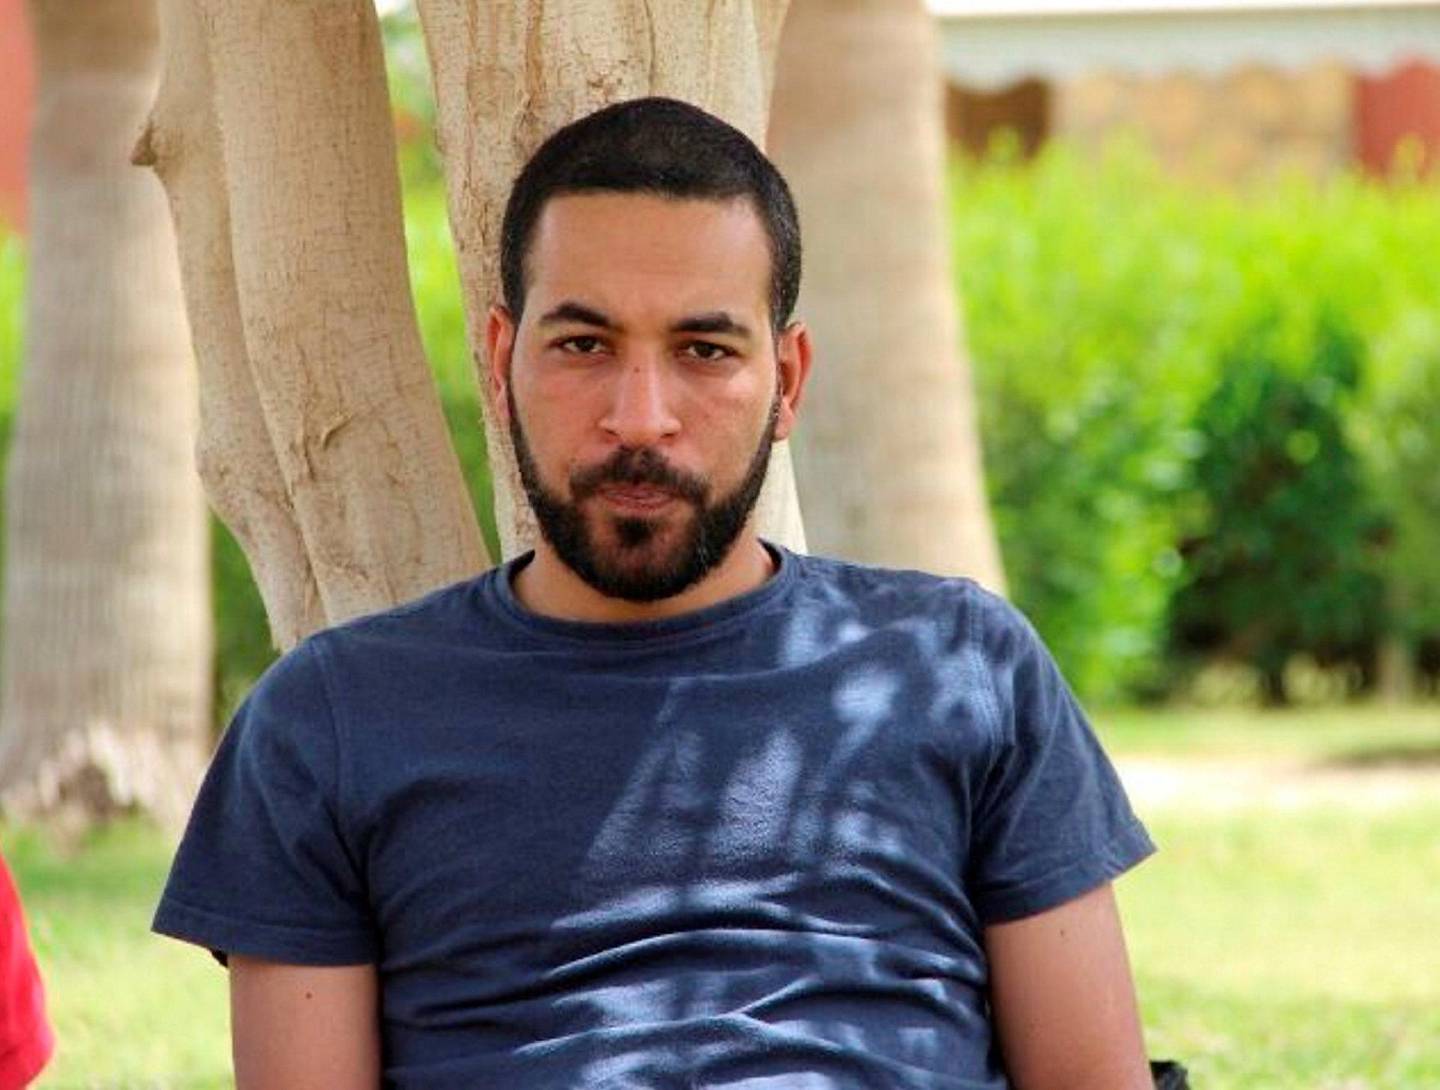 Shady Zalat er en av redaktørene i Mada Masr. Ifølge nettavisen ble han pågrepet i sitt hjem forrige uke. Foto: NTB scanpix